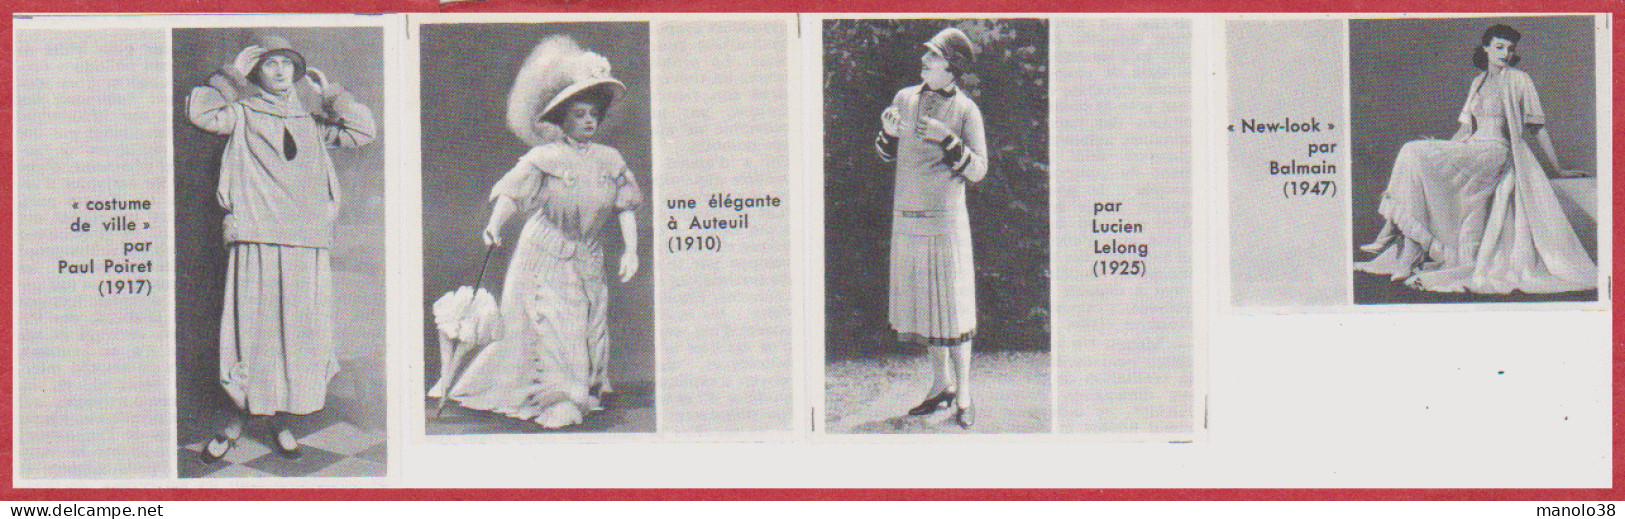 Mode. Costume Par P Poiret (1917), élégante (1910), Par L Leblond (1925) Et "New Look" Par Balmain (1947). Larousse 1960 - Historical Documents